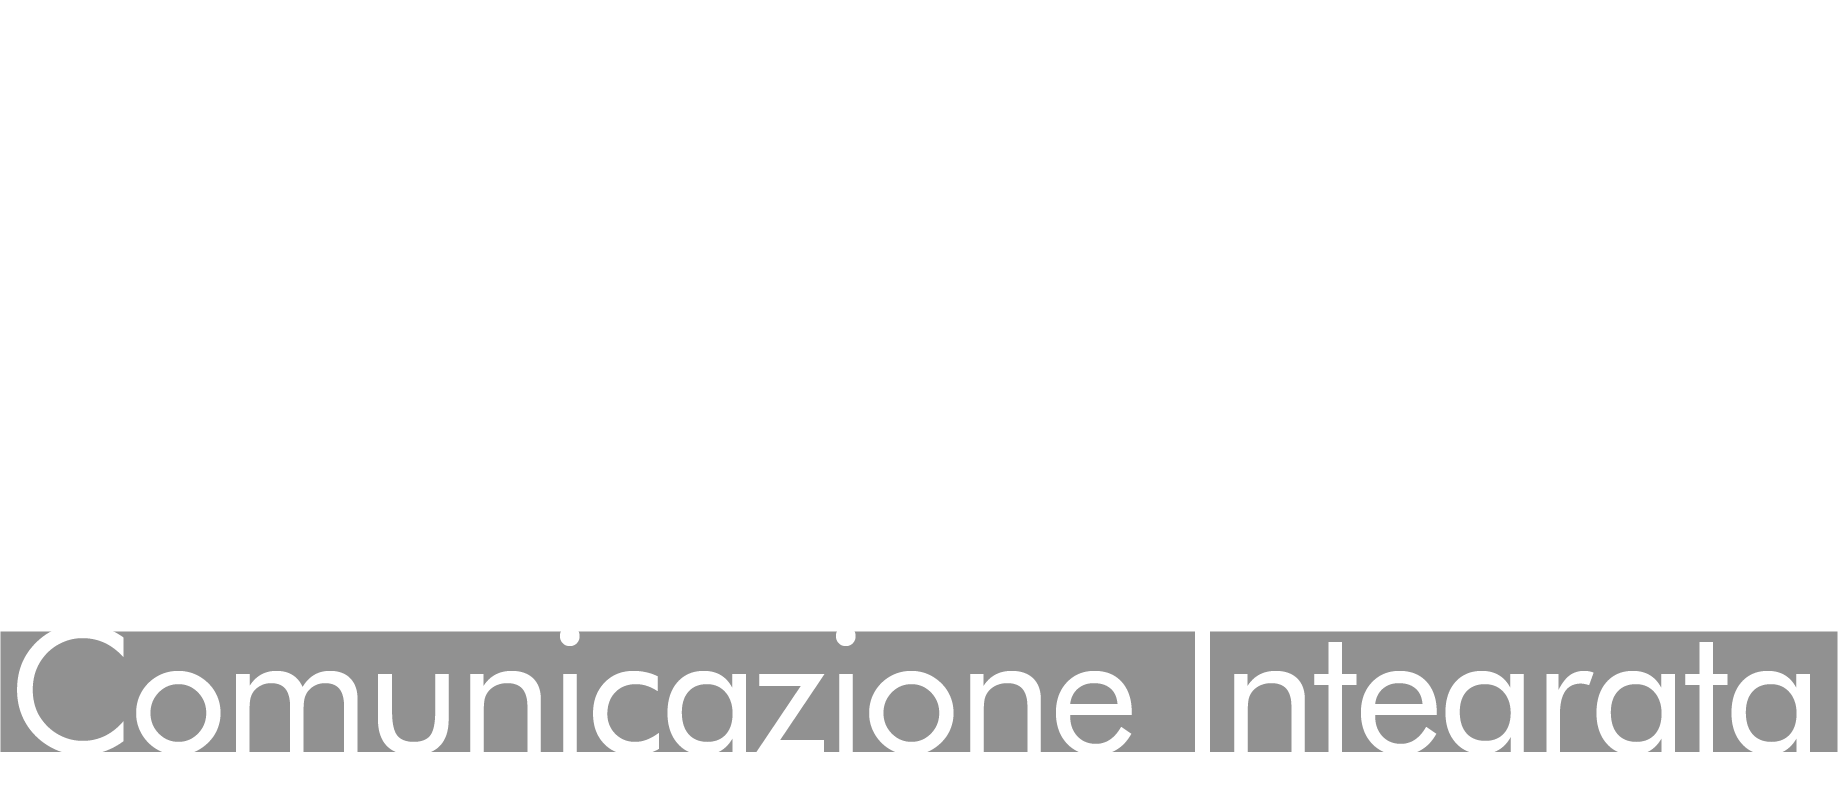 Media-In